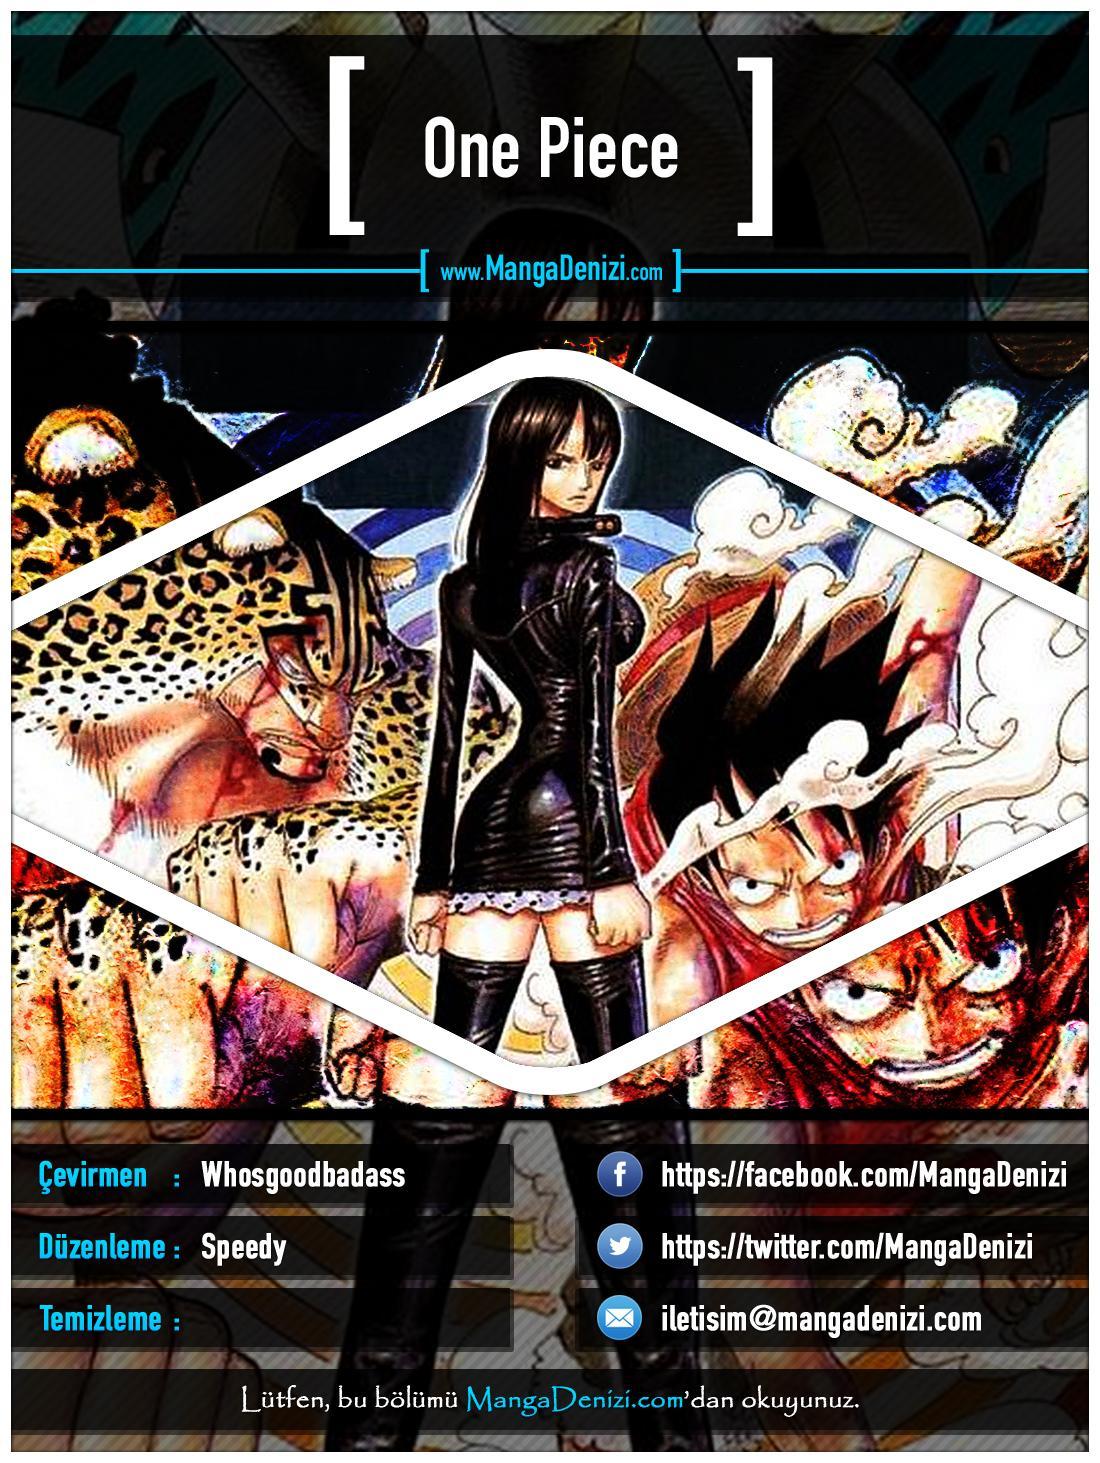 One Piece [Renkli] mangasının 0359 bölümünün 1. sayfasını okuyorsunuz.